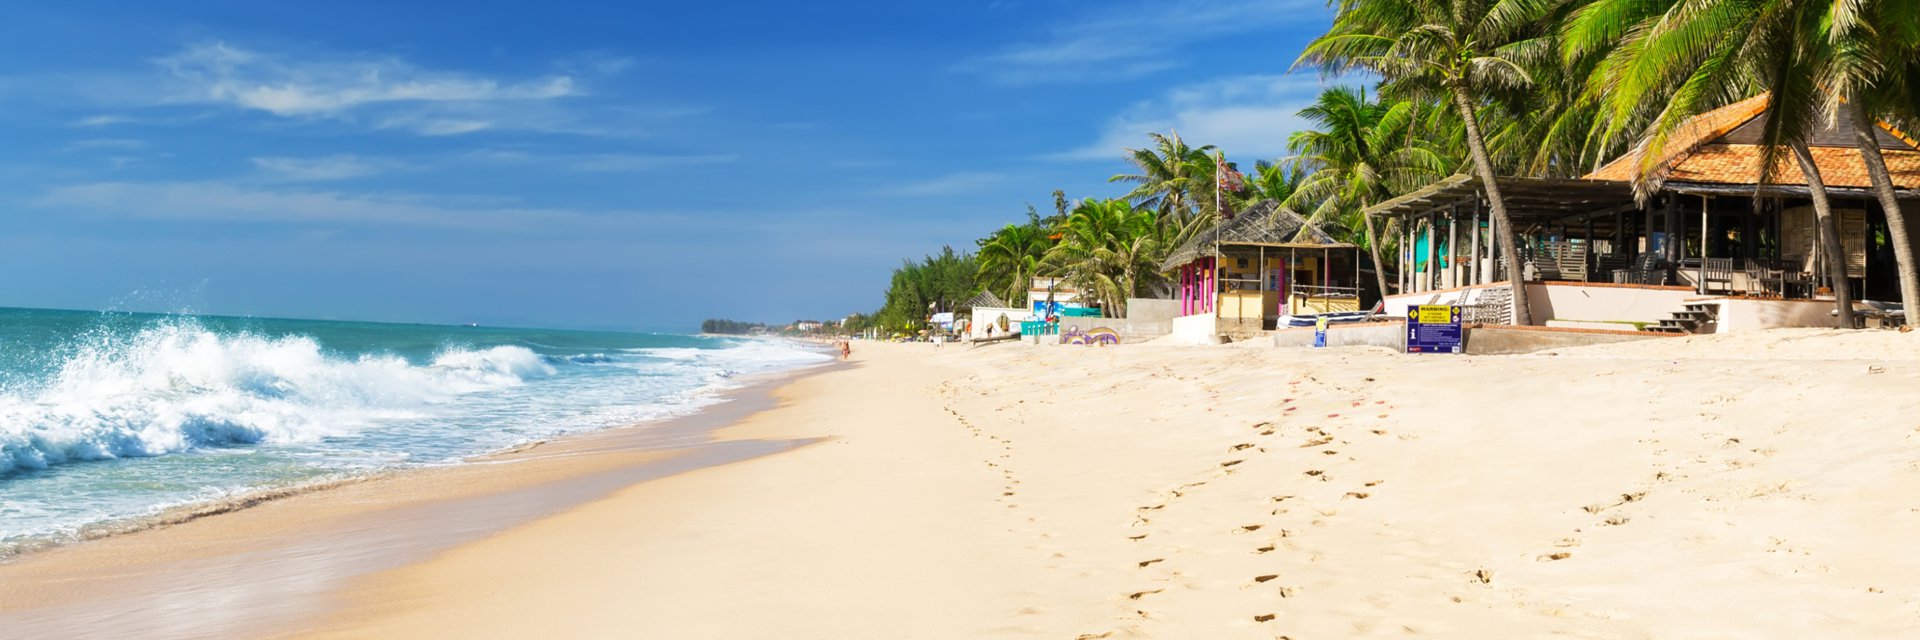 Ocean Star Resort 4* (Фантхиет, Вьетнам) - цены, отзывы, фото, бронирование - ПАКС